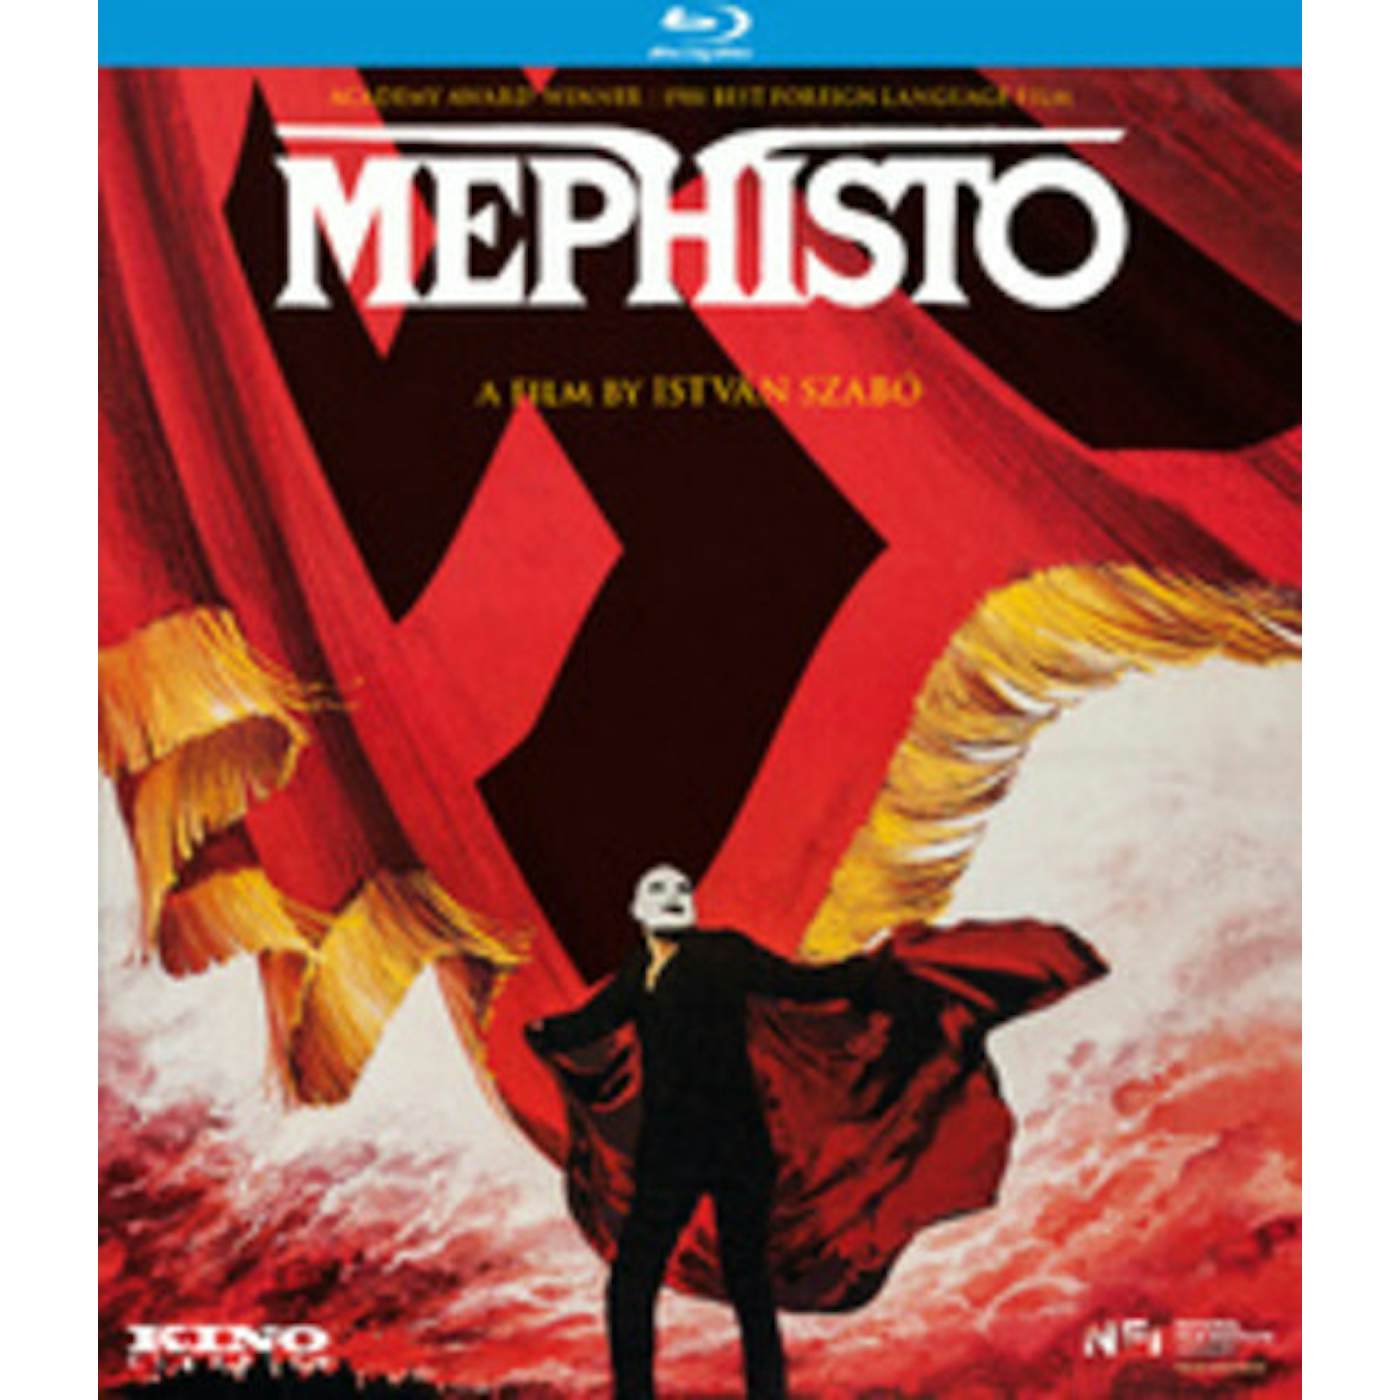 MEPHISTO (1981) Blu-ray